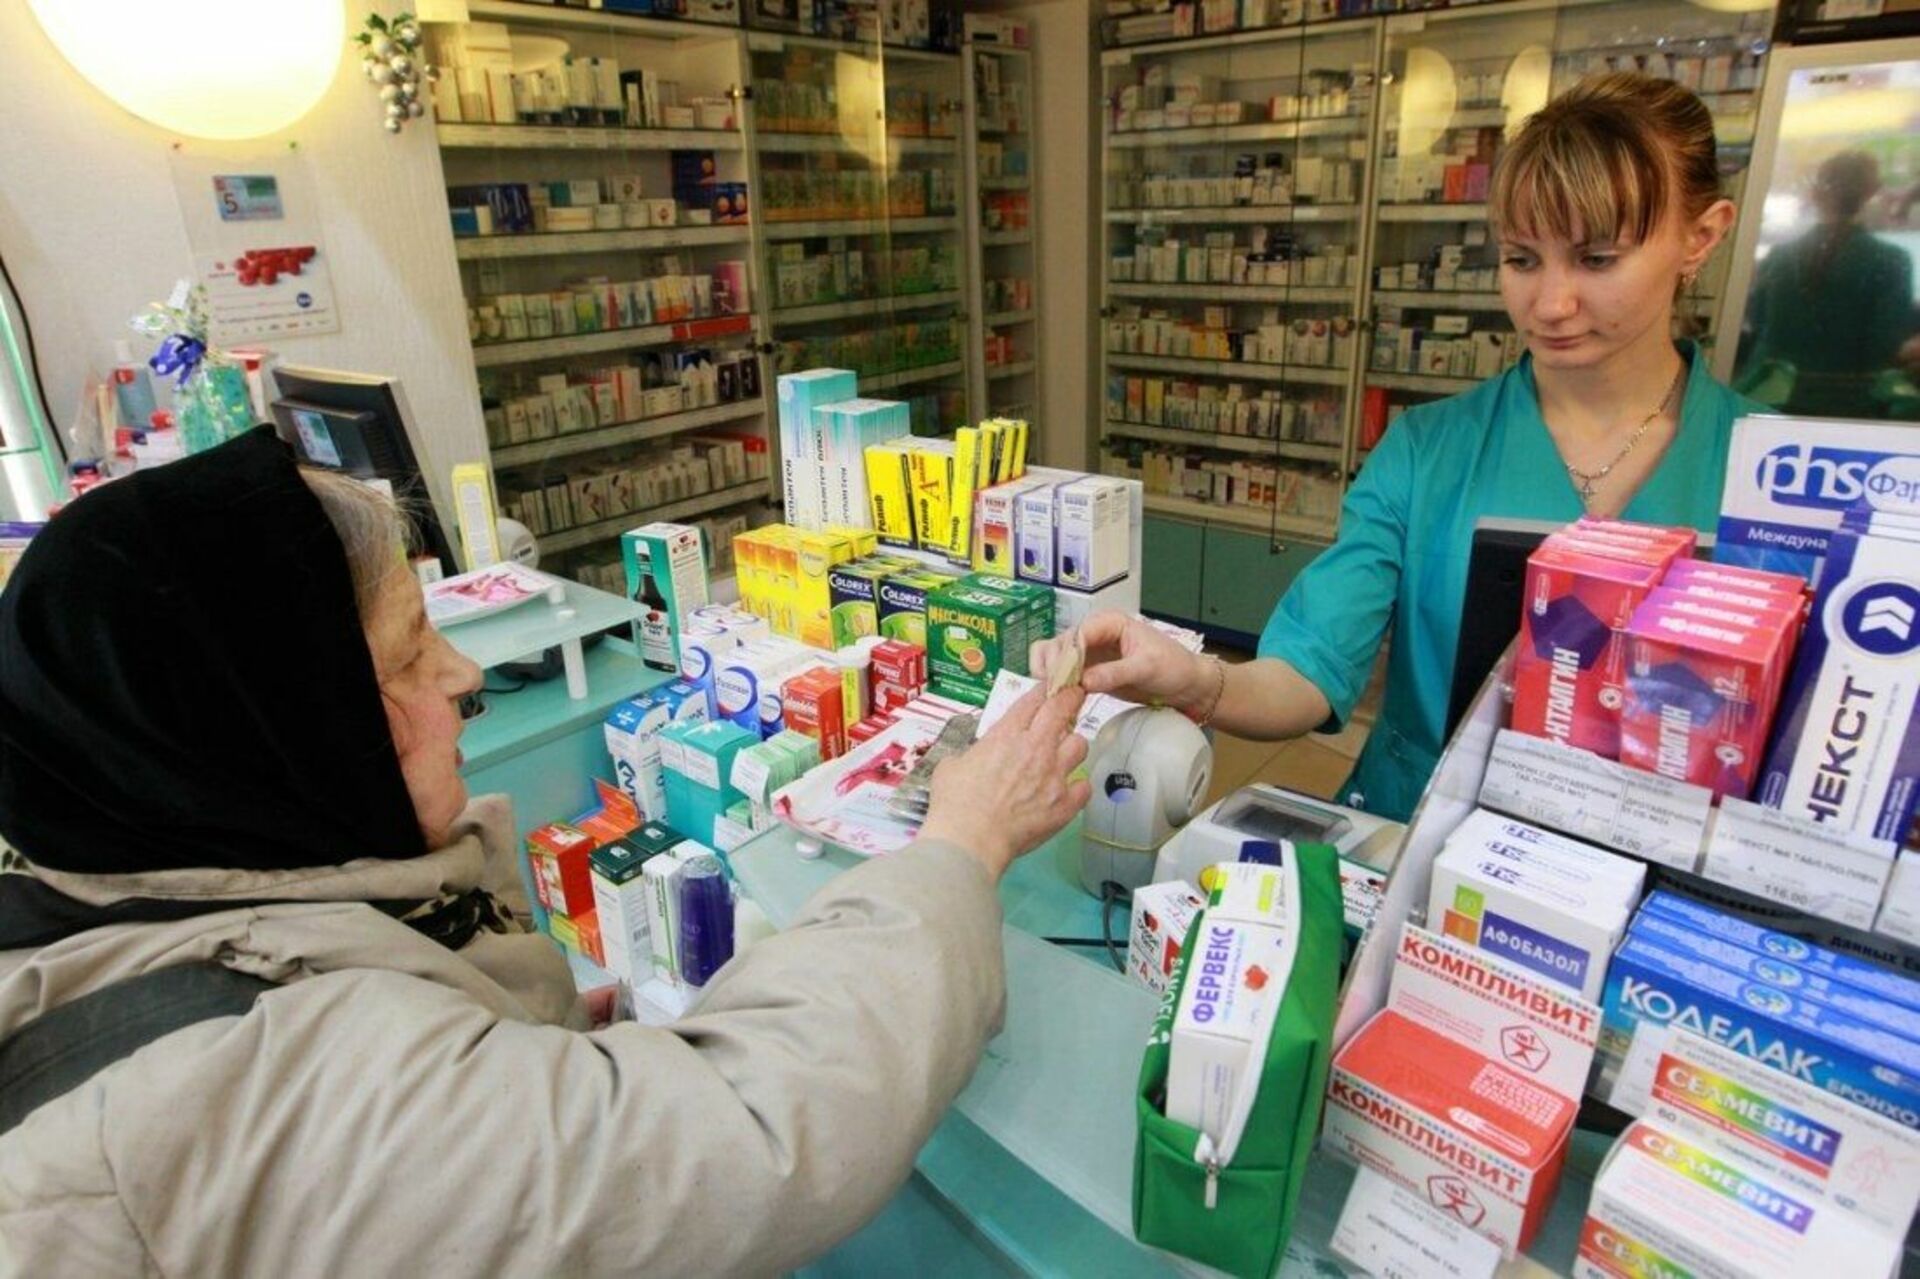 Купить в аптеке форум. Лекарственные препараты в аптеке. Аптечные лекарства. Реализация лекарств в аптеке.